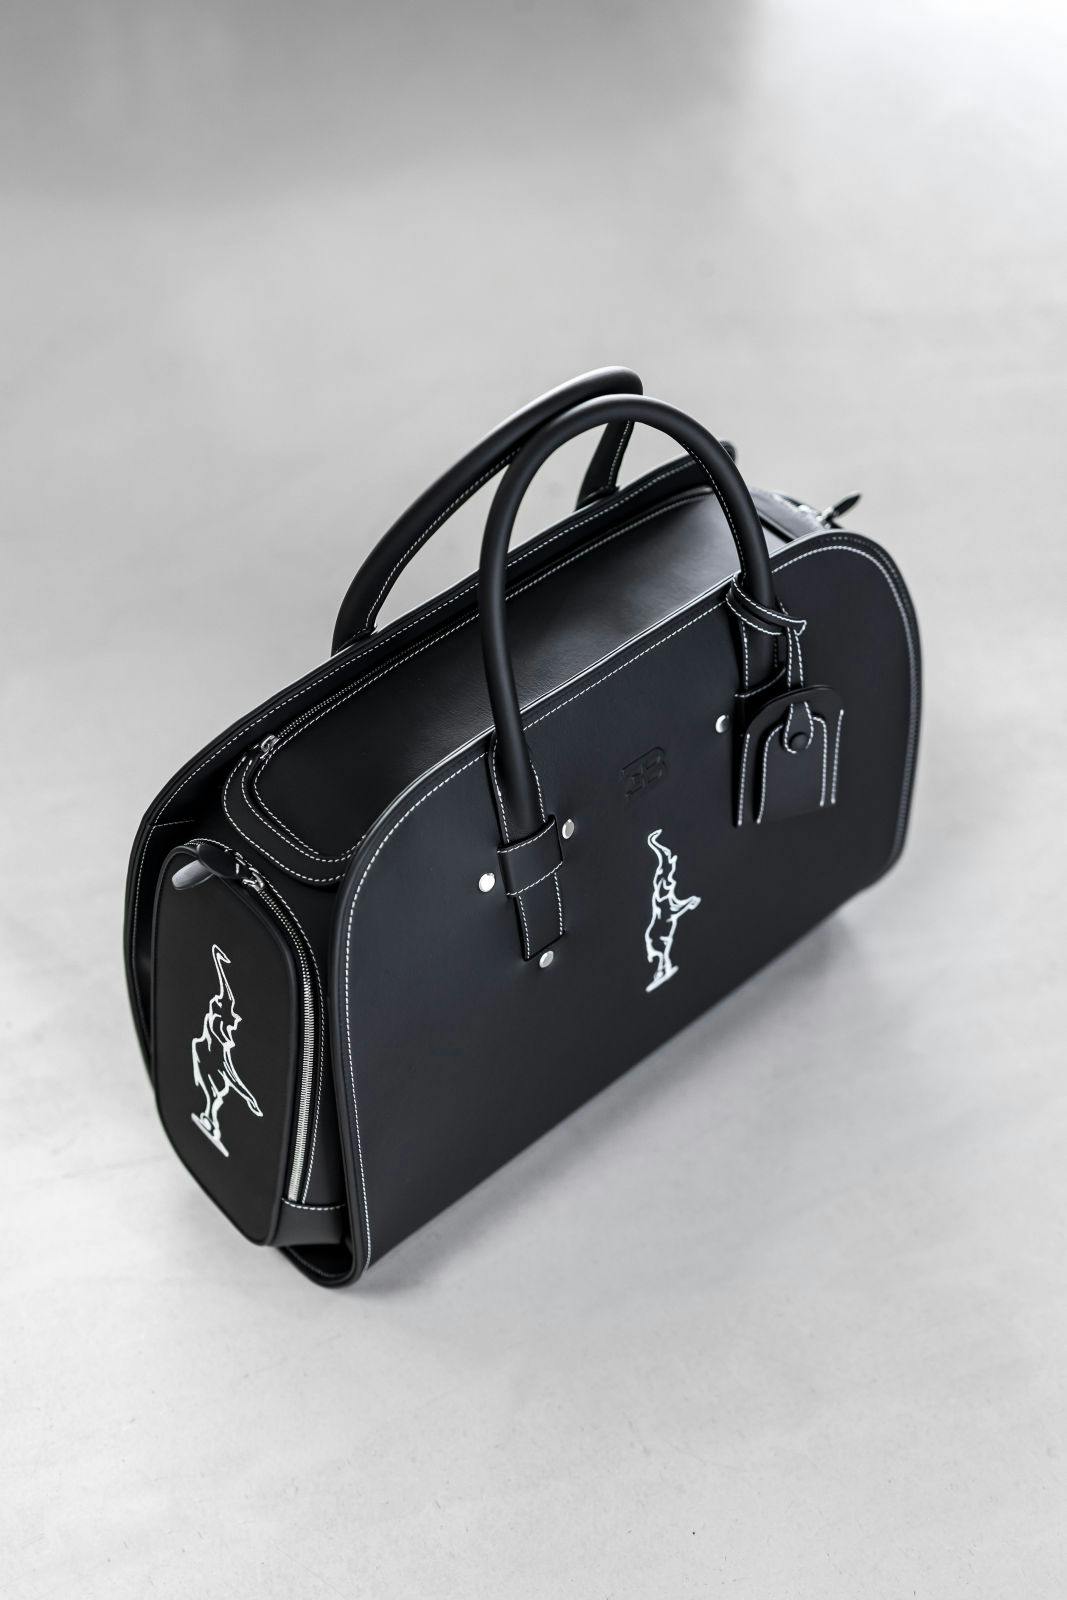 Bugatti by Schedoni: das exklusive Luggage Set für den Bugatti Chiron.